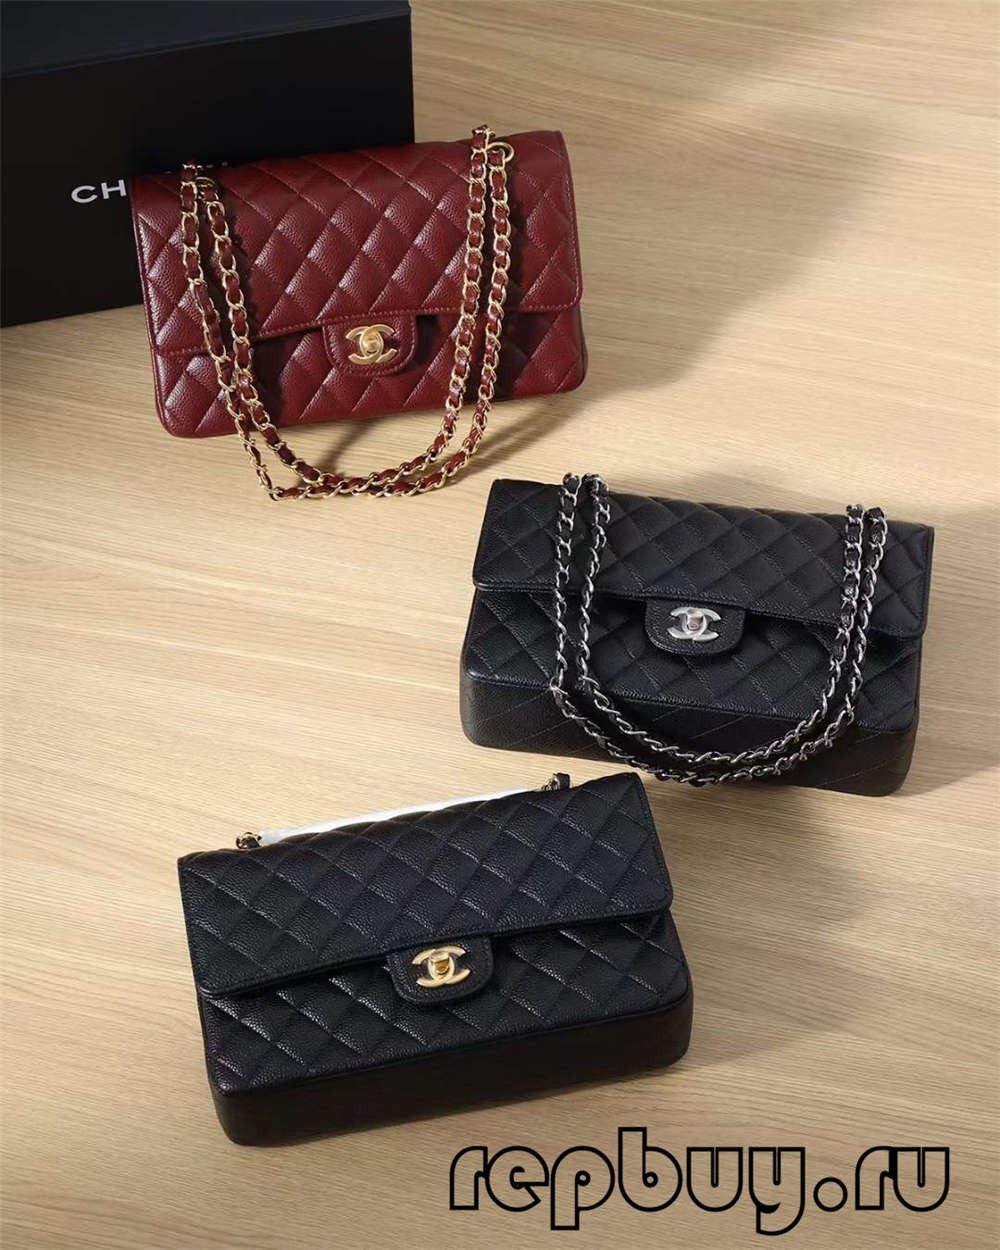 Shebag, o máis vendido de todos os tempos——Top réplica da solapa clásica media media máis clásica de 25 cm de Chanel (Chanel CF Caviar Leather Black) (actualizado en 2022)-Bolso Louis Vuitton falso de mellor calidade, tenda en liña de réplica de bolsa de deseño ru